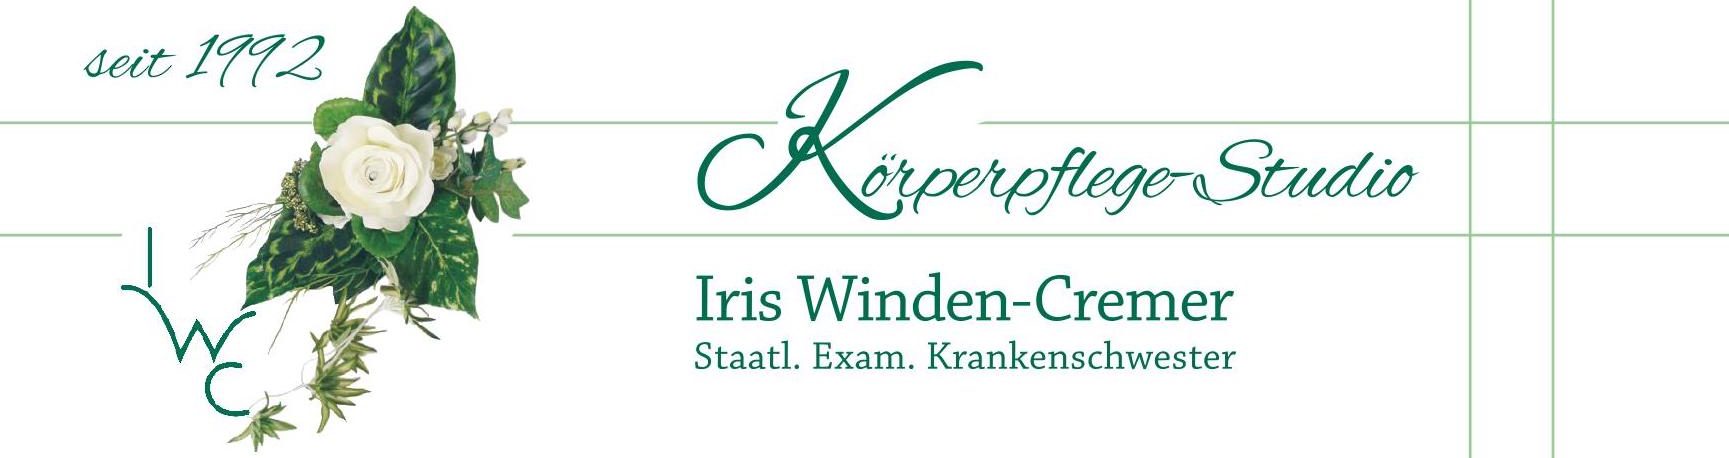 Körperpflegestudio Iris Winden-Cremer